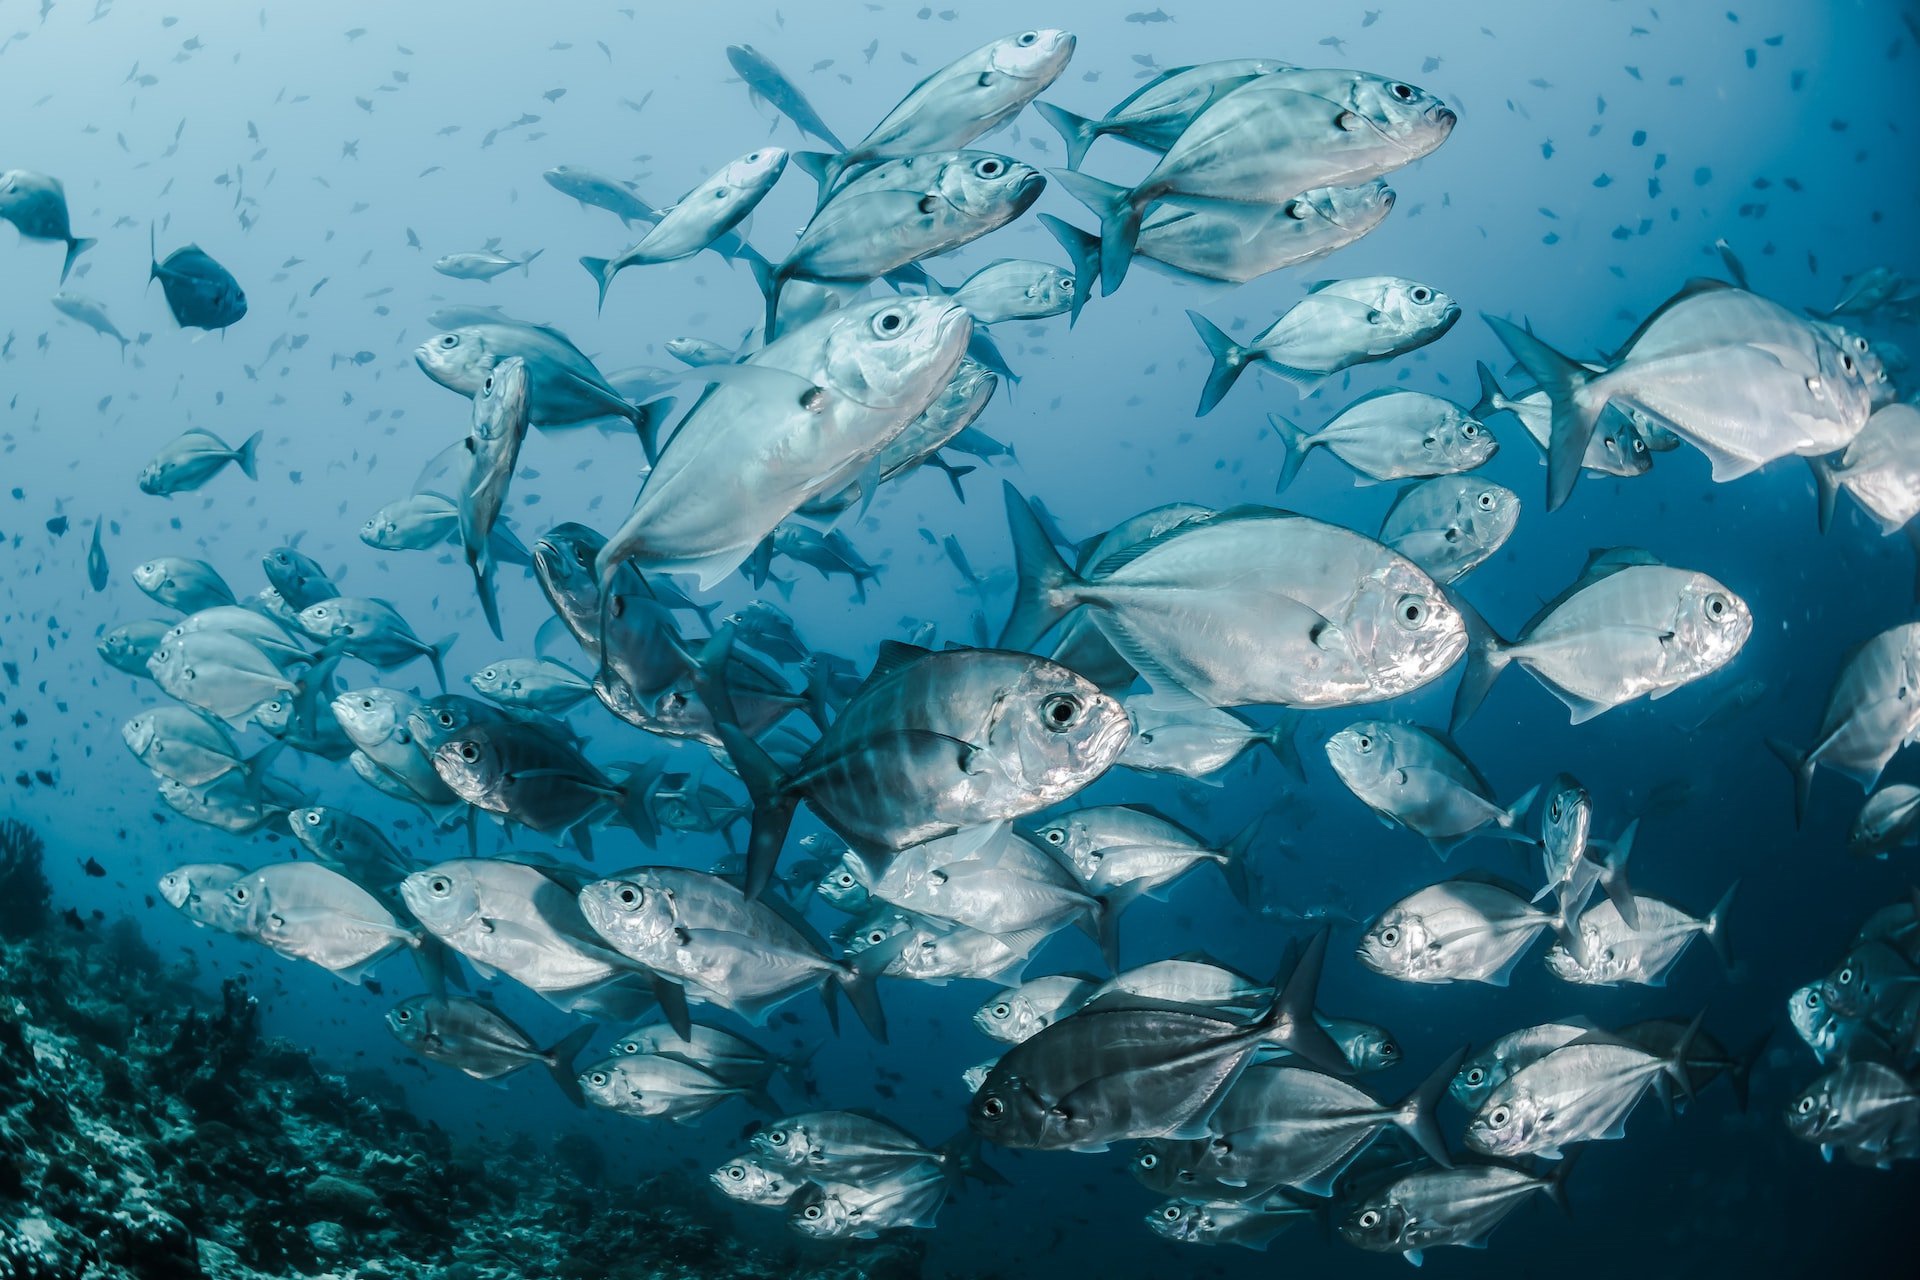 Калифорния может прекратить тестирования на гибель рыбы